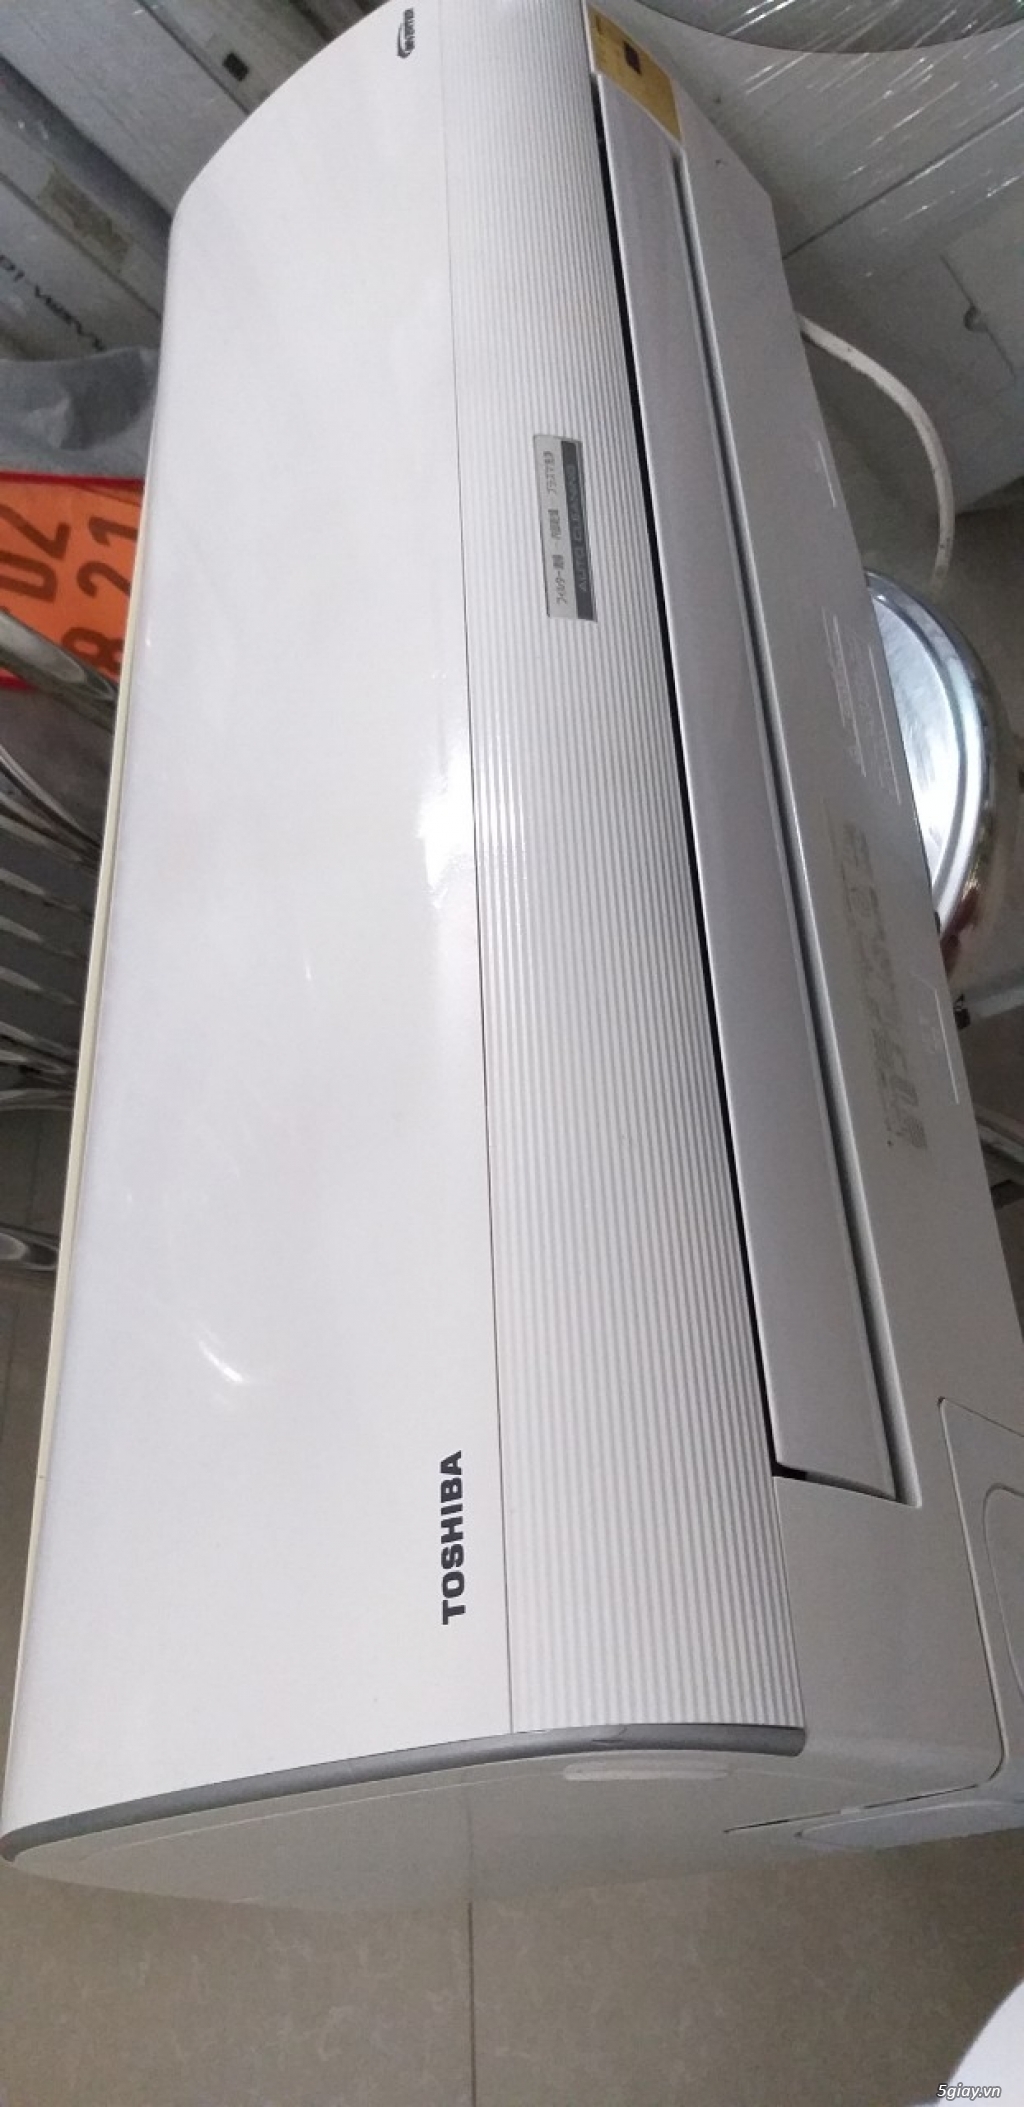 Máy lạnh Toshiba chính hãng giá rẻ Bình Tân (máy lạnh nội địa Nhật) - 1